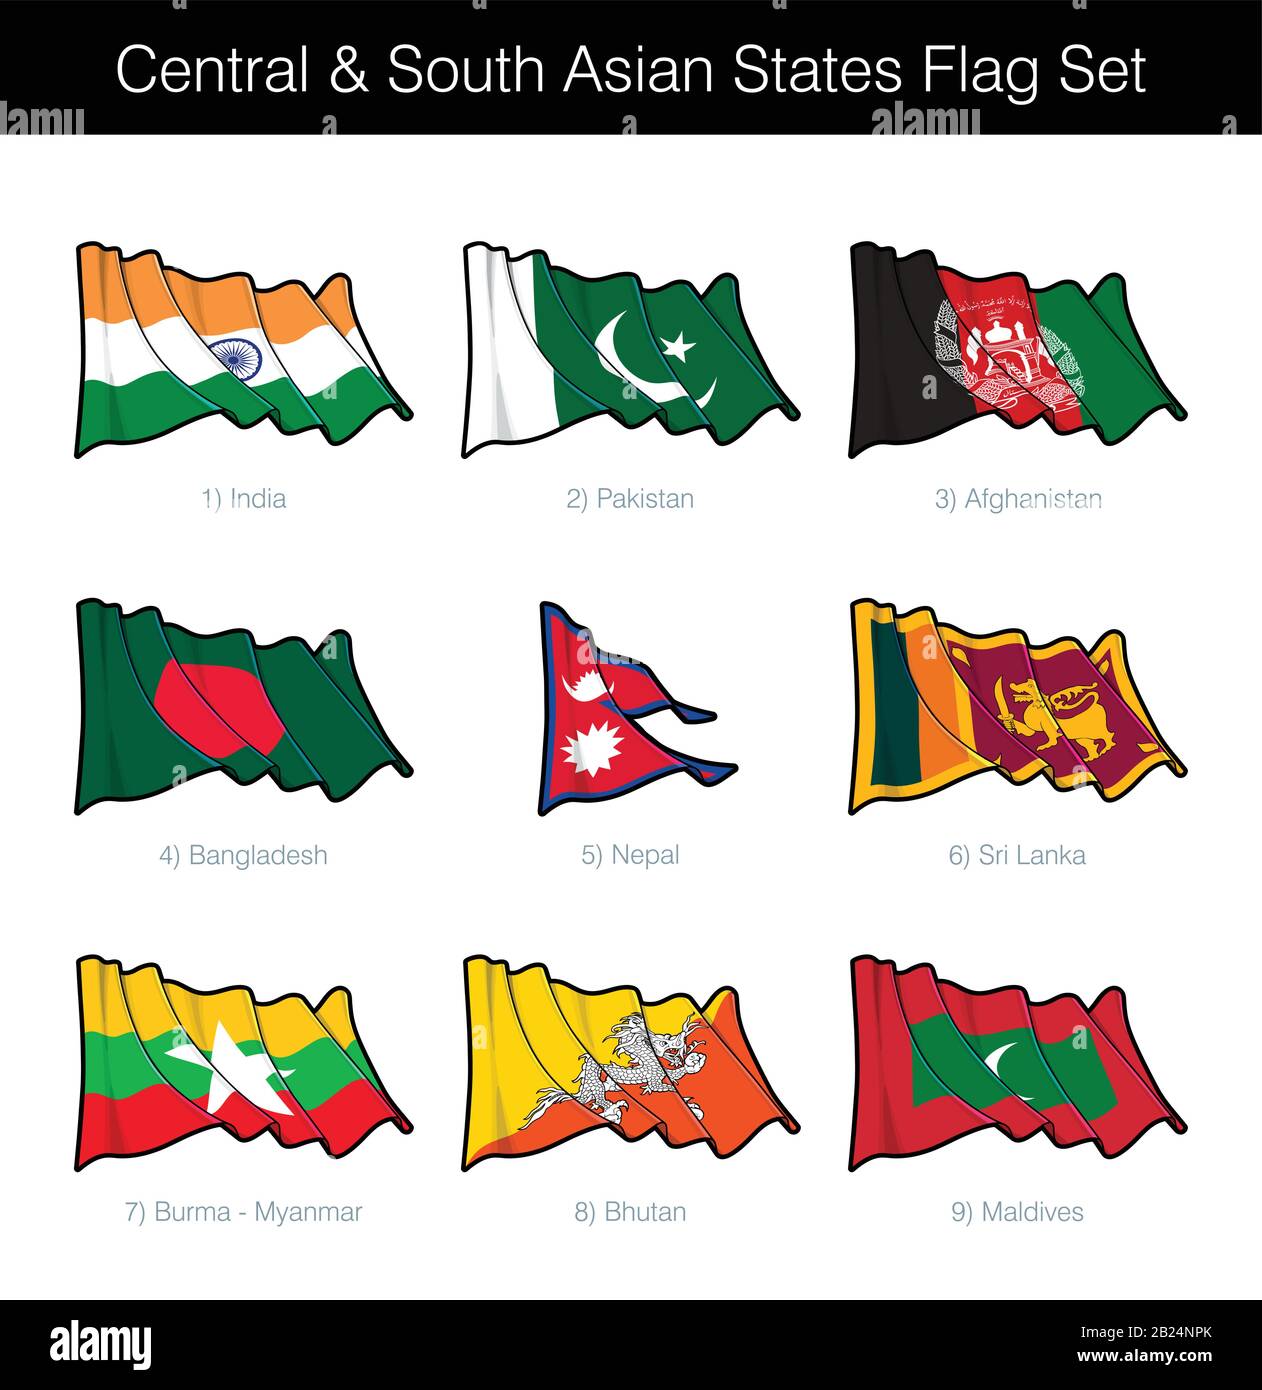 Mittel- und südasiatische Staaten Winken Flaggensatz. Der Satz umfasst die Flaggen Indiens, Pakistans, Afghanistans, Bangladeschs, Nepals, Sri Lankas, Burmas und Bhutas Stock Vektor